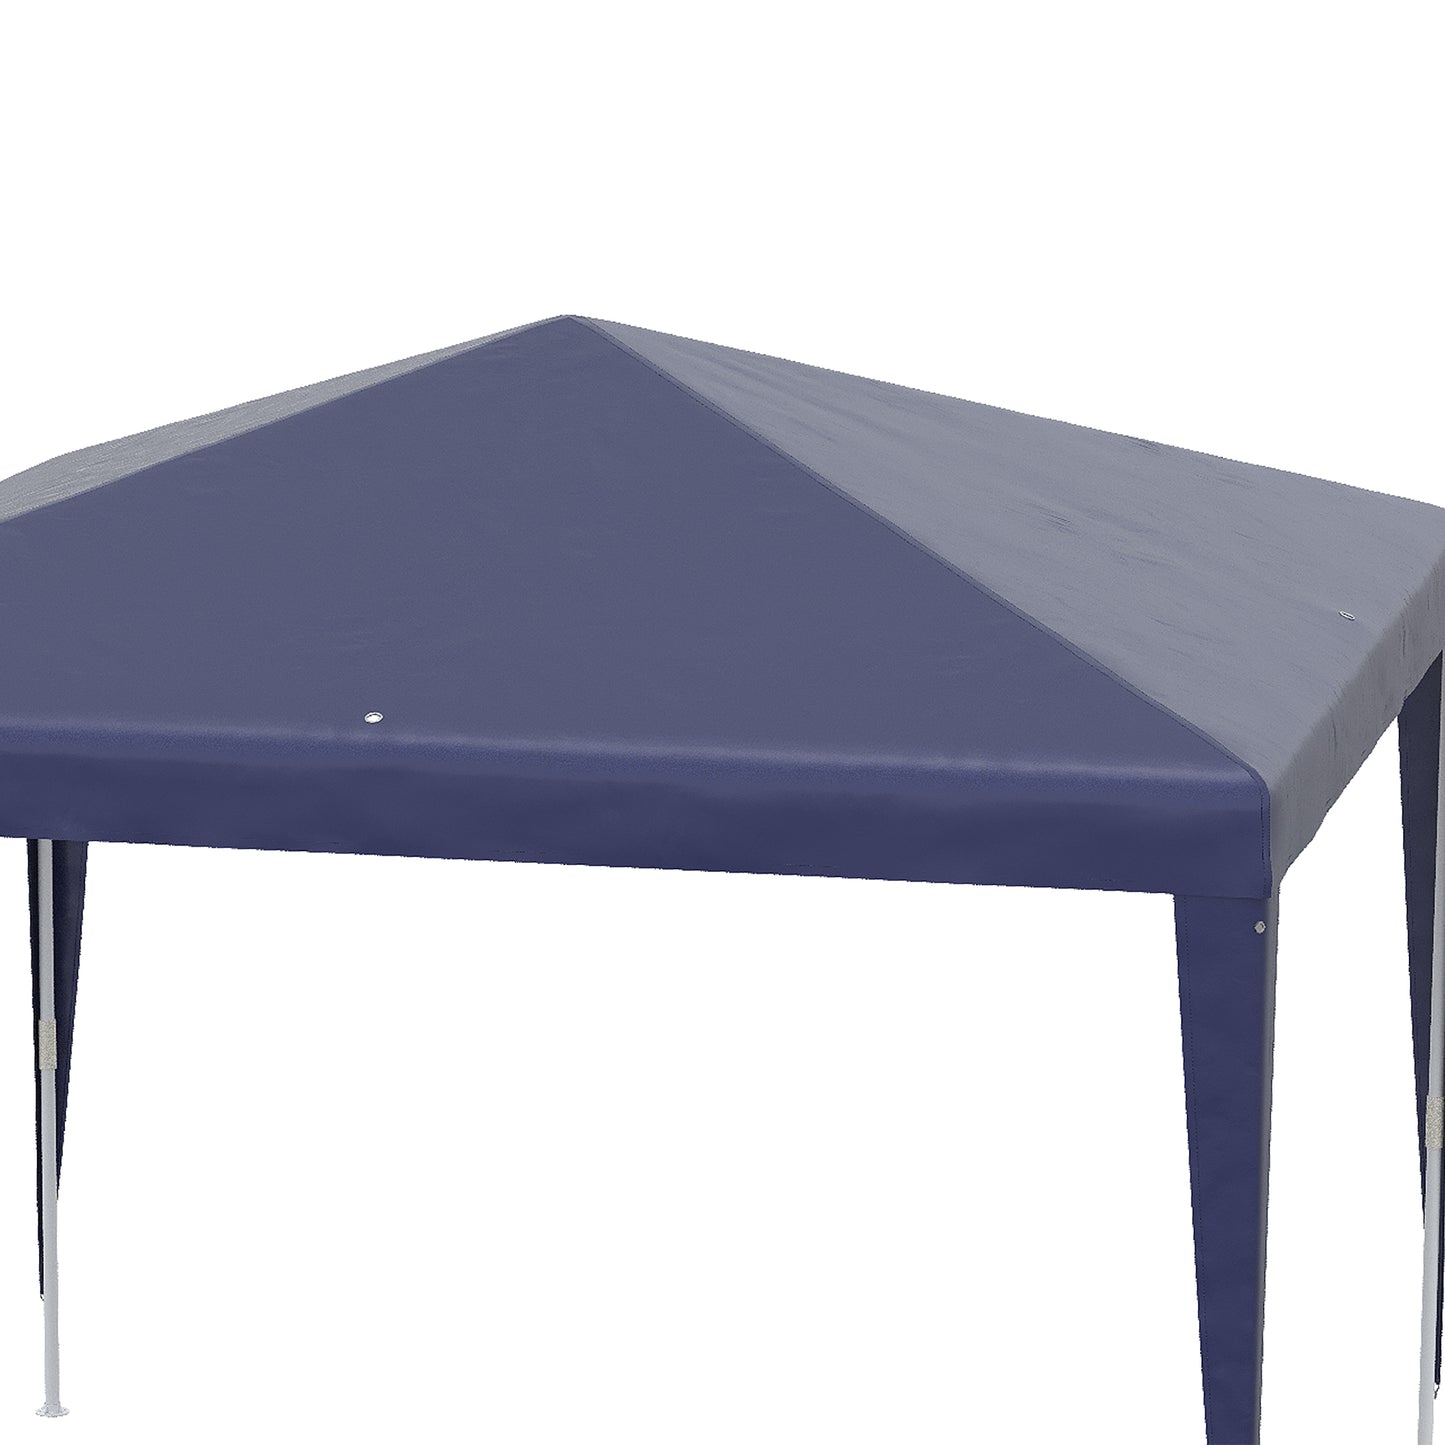 Outsunny Carpa Desmontable 3x3 m Cenador Pabellón de Jardín con 4 Orificios de Drenaje y Marco de Acero Anti-UV Impermeable Gazebo para Terraza Patio Exterior Camping Azul